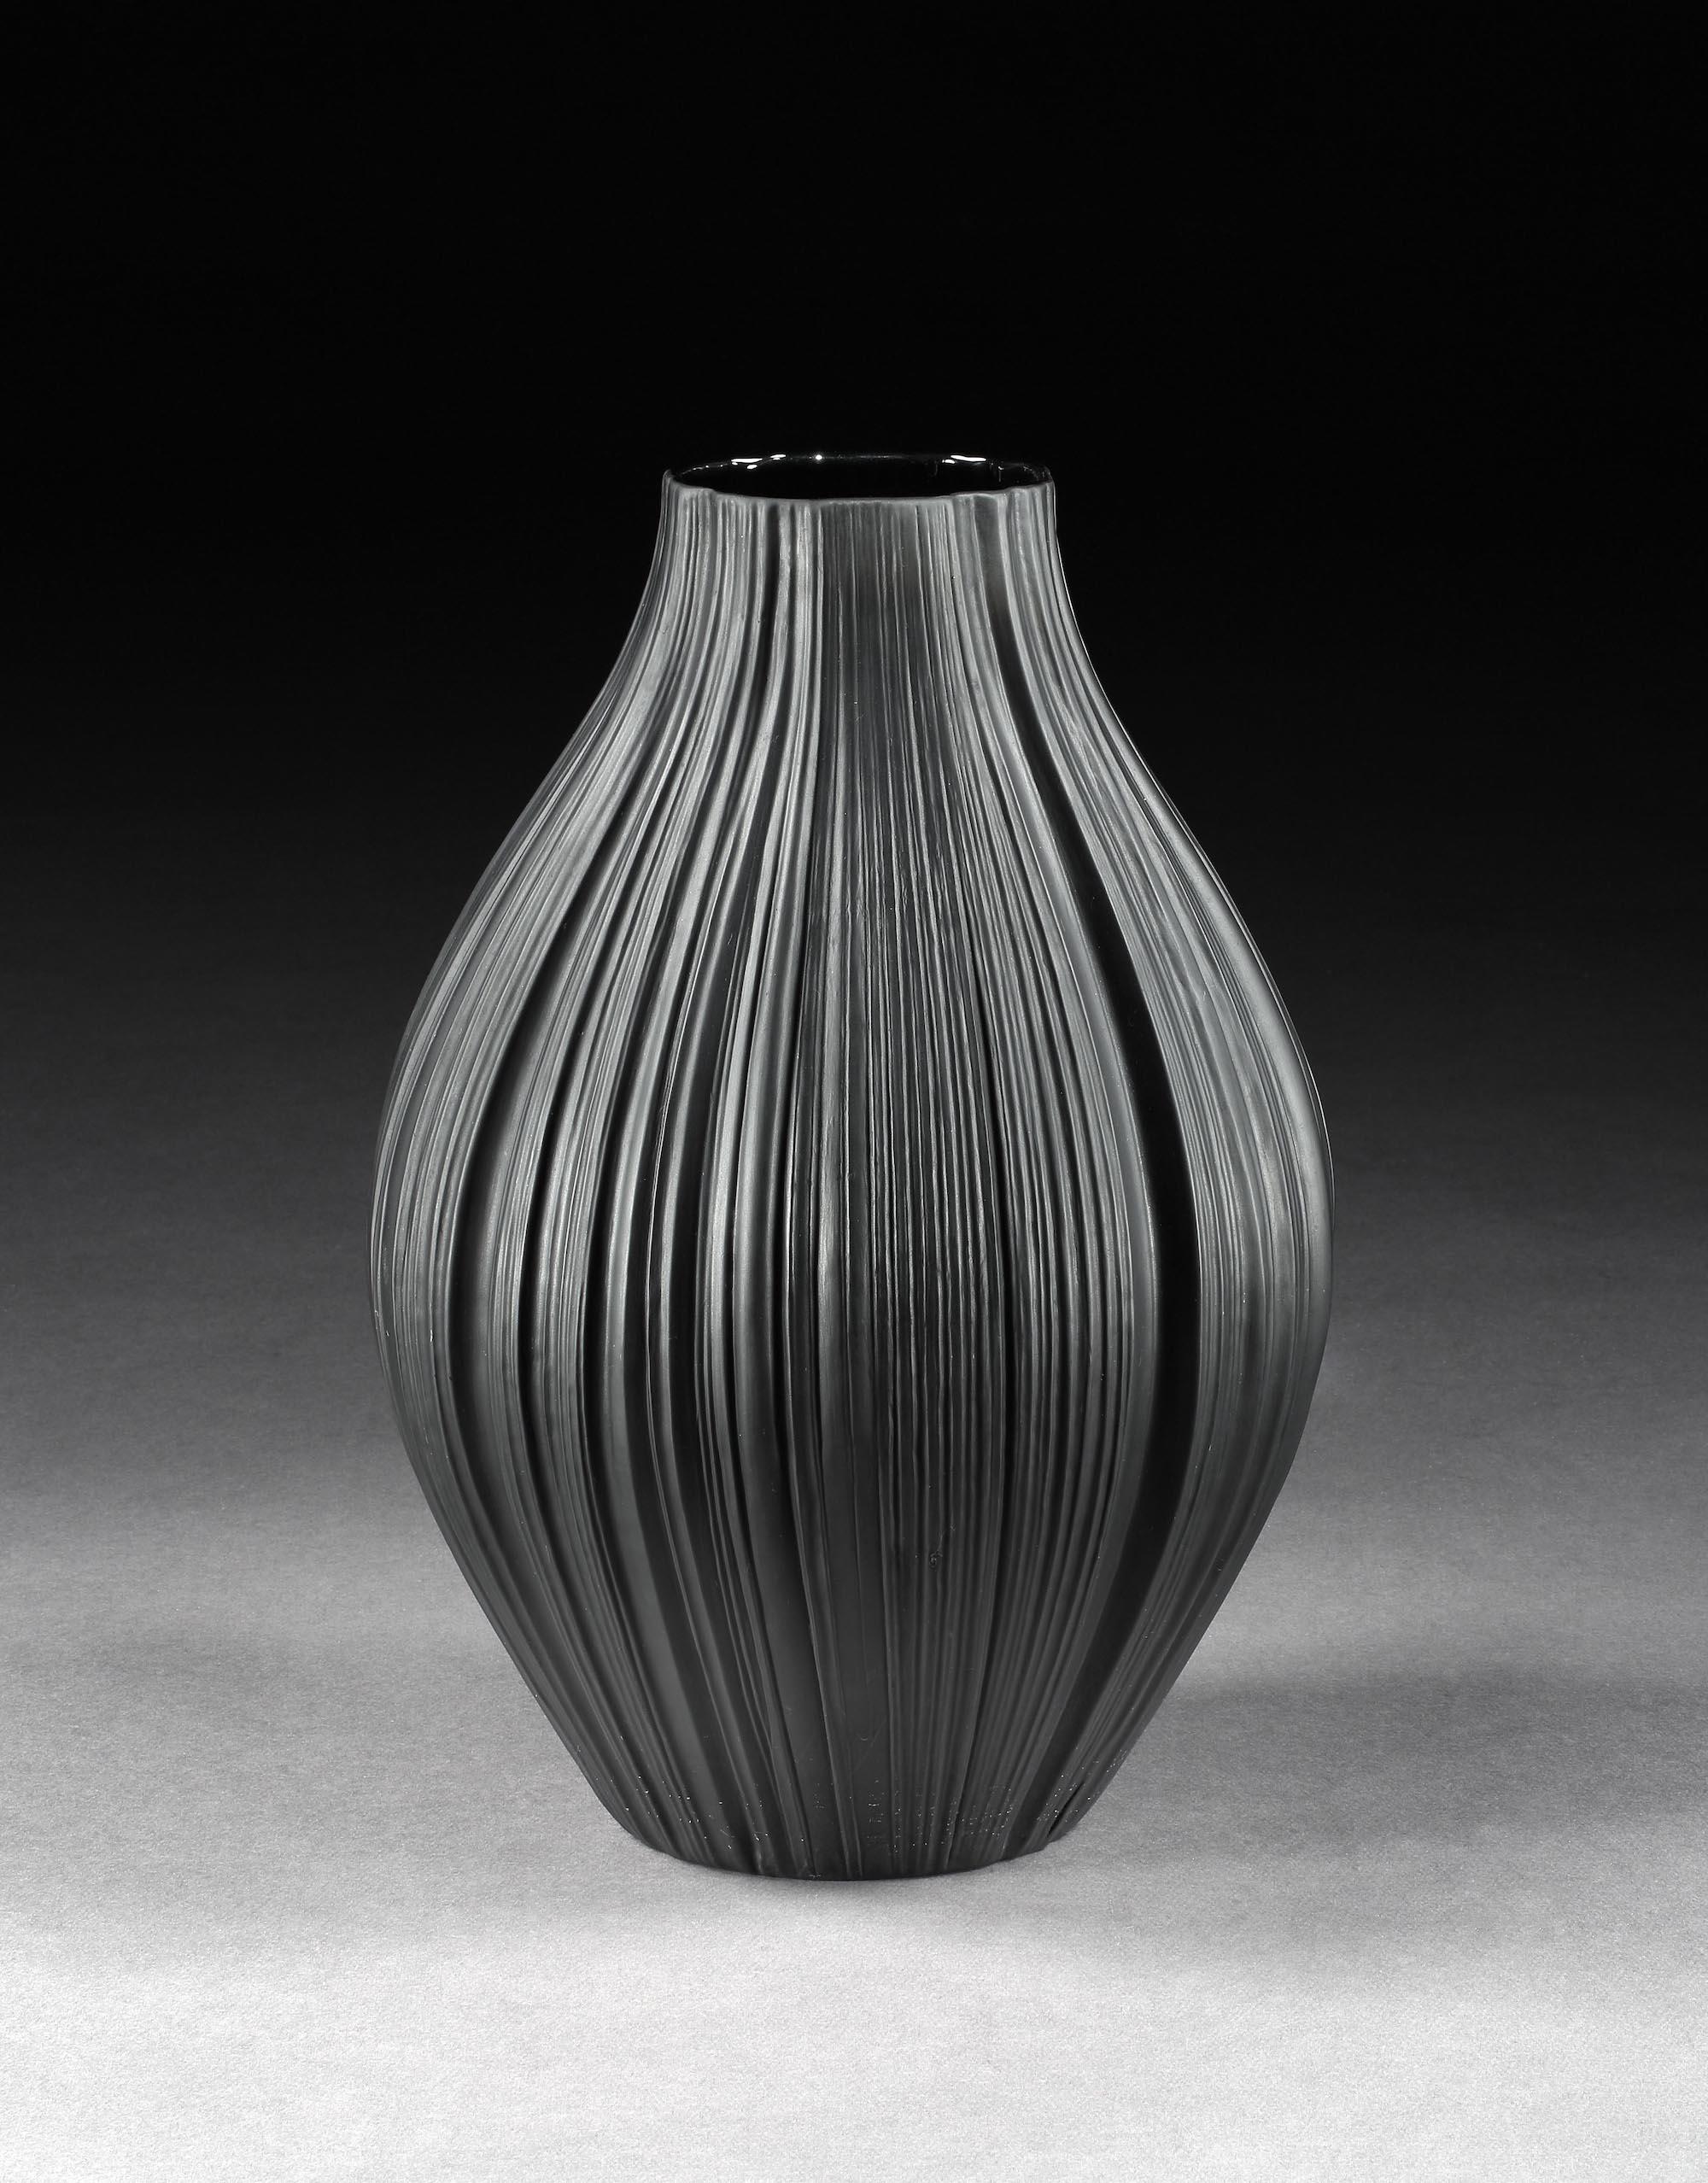 Martin Freyer für Rosenthal Studio: Massive, schwarze Porzellan-Falten- oder Plissee-Vase, 1968

- Die Faltenvase gilt als Martin Freyers bestes Werk, das sich mit dem antiken Thema der Drapierung in der Kunst beschäftigt.
Freyer war sowohl als